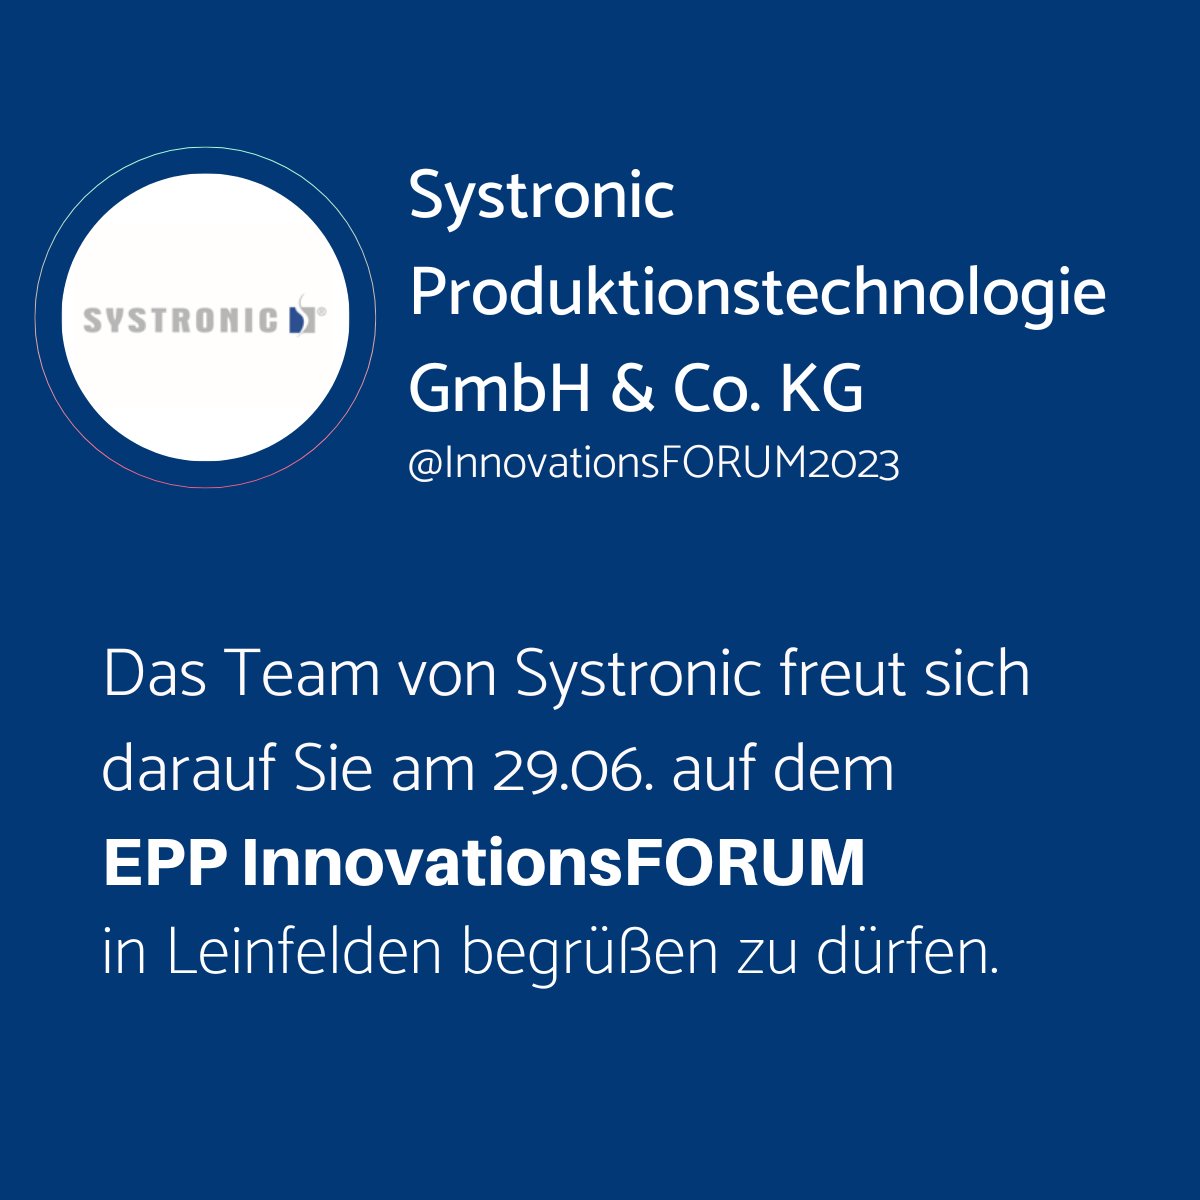 Das Team der Systronic Produktionstechnologie GmbH & Co. KG freut sich auf Ihren Besuch!

Jetzt anmelden: 
epp.industrie.de/innovationsfor…

#IFD23 #smt #smd #electronics